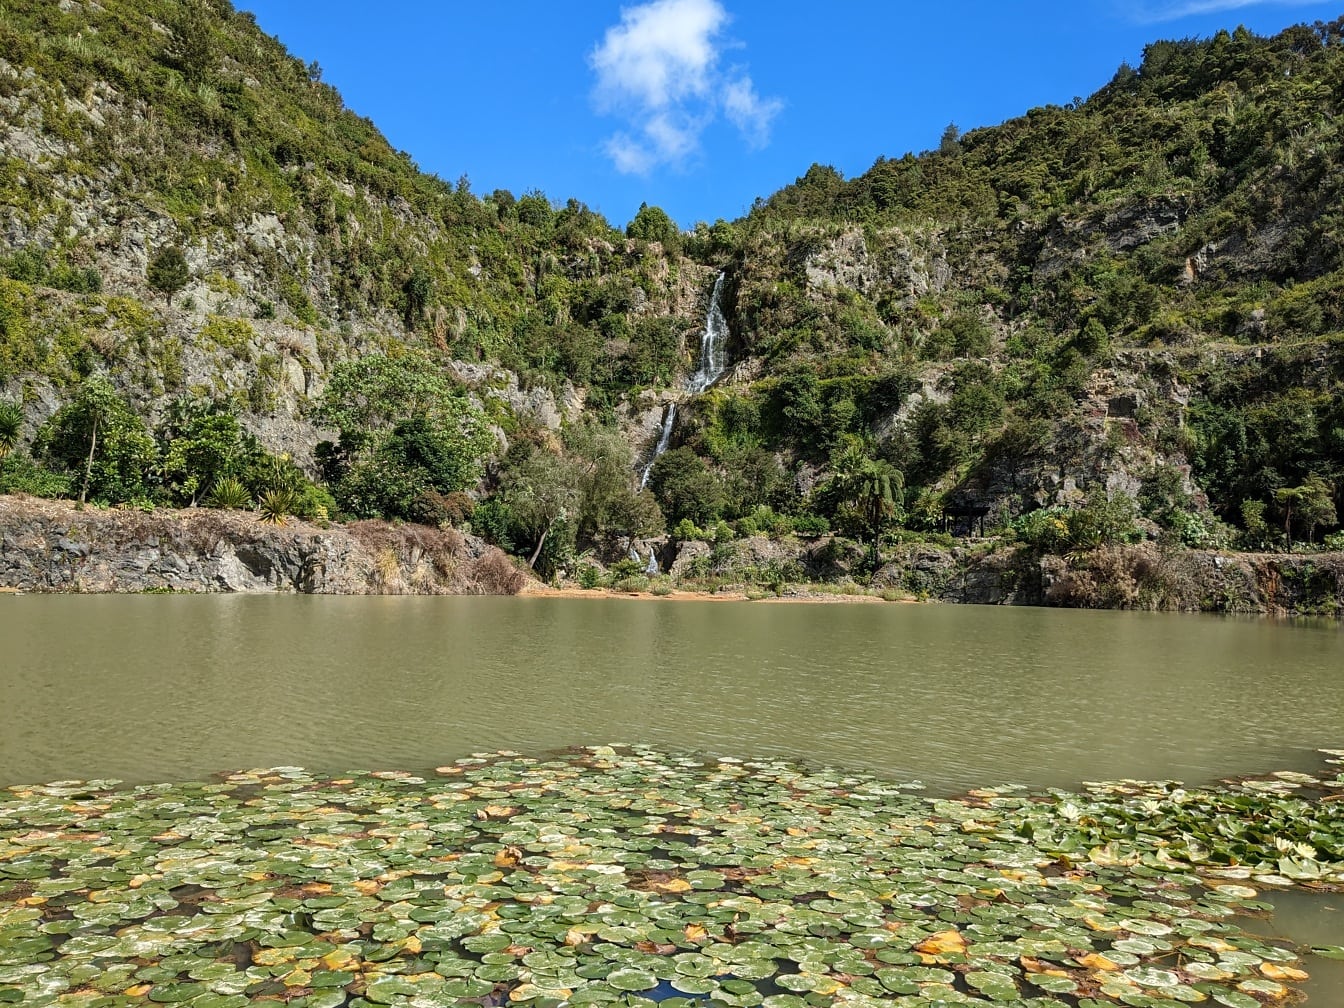 Whangarei Quarry градини езеро субтропичен оазис Нова Зеландия